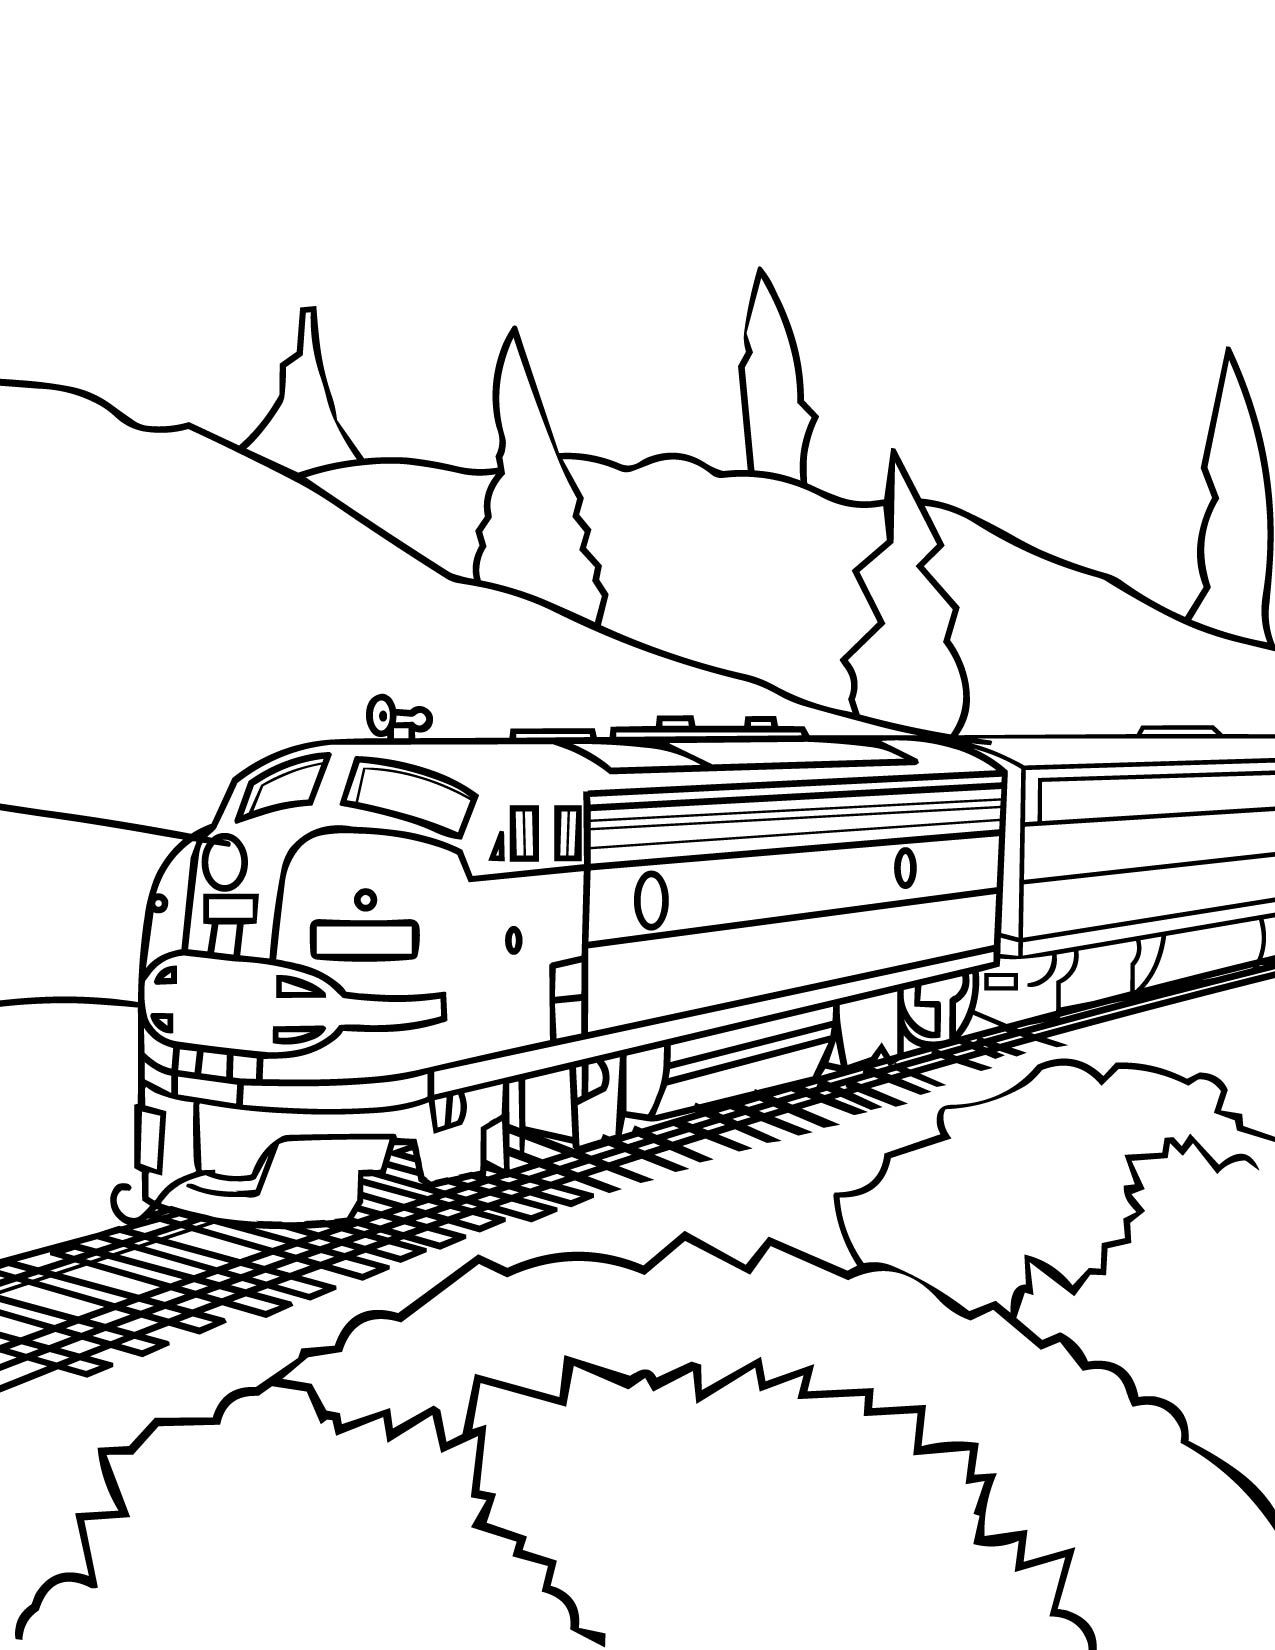 Trang màu xe lửa đơn giản đẹp cho trẻ em 